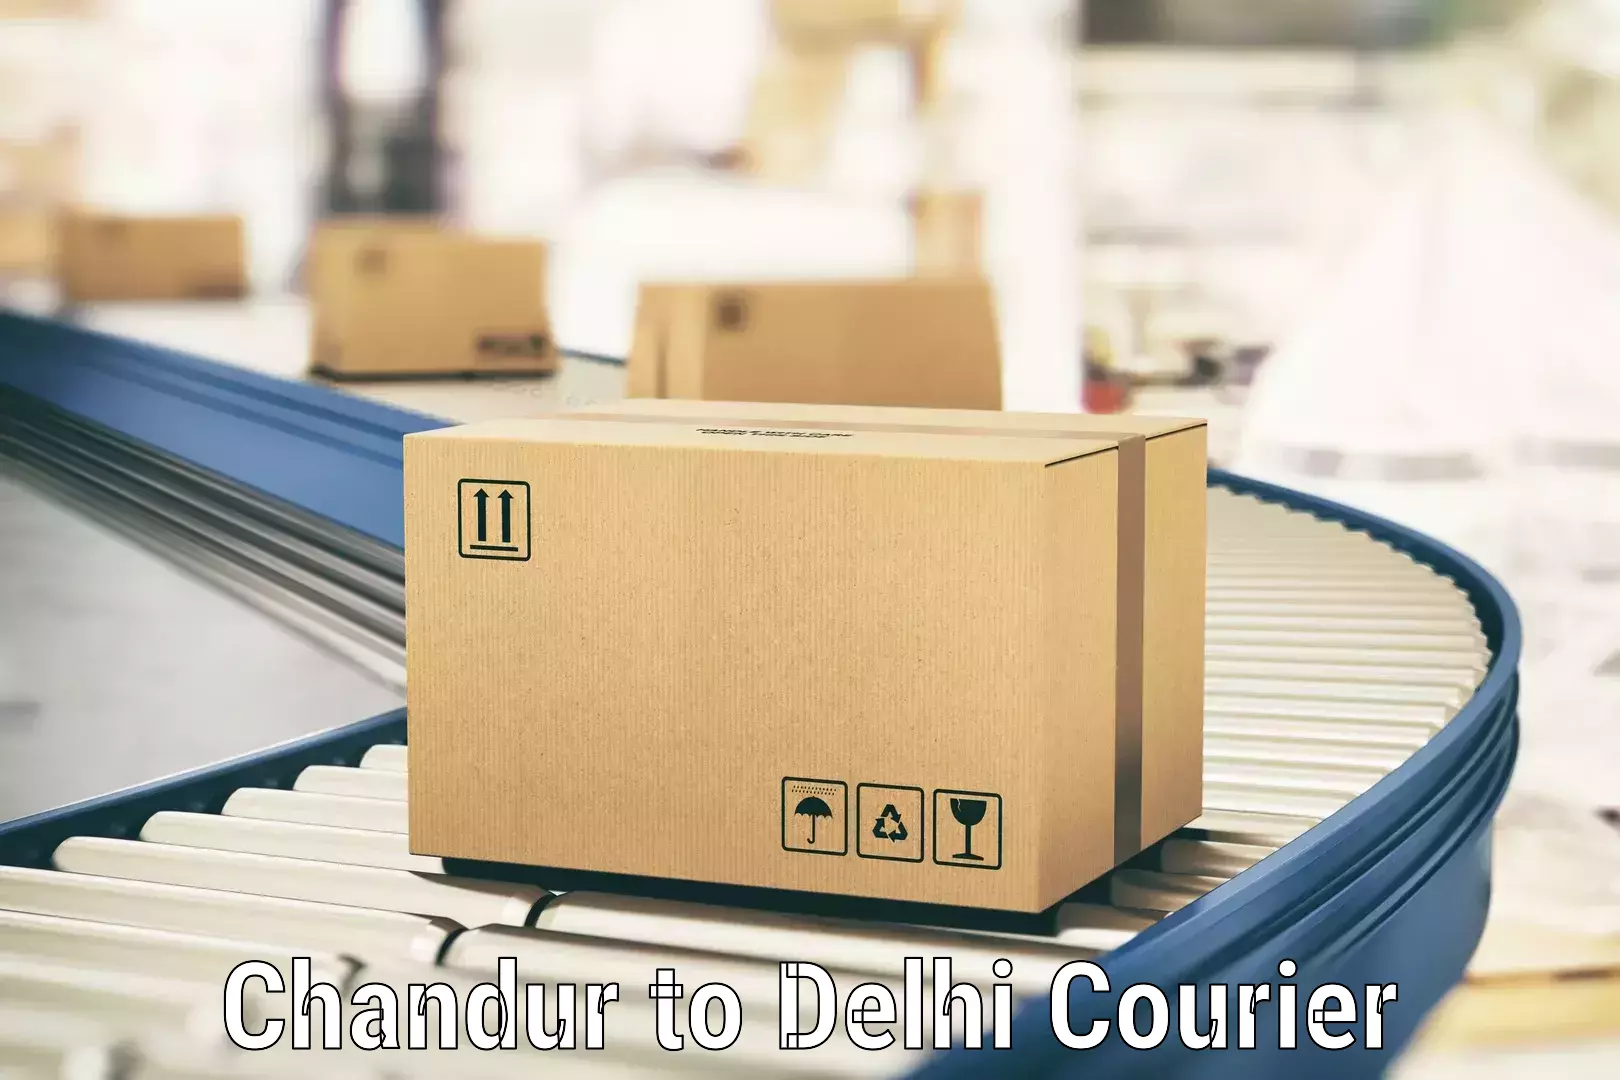 Local courier options in Chandur to Jamia Millia Islamia New Delhi